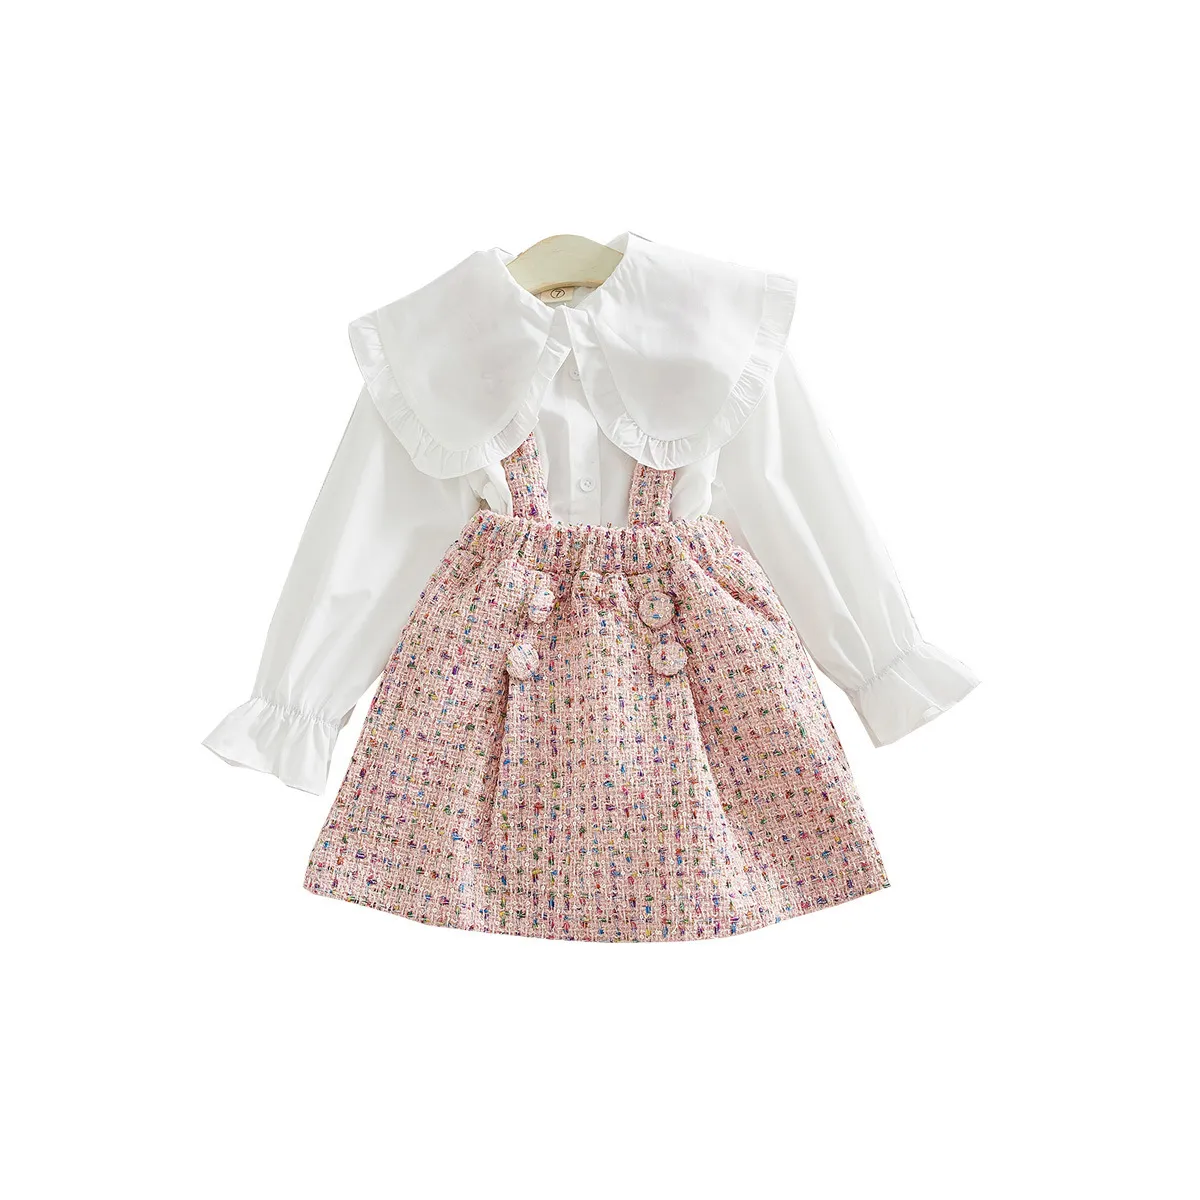 Moda dziewczęta Ubrania Ubrania białej bluzki i różowa ogólna spódnica maluch dziewczyna 039s jesienne stroje słodkie dla dzieci odzież 1311051